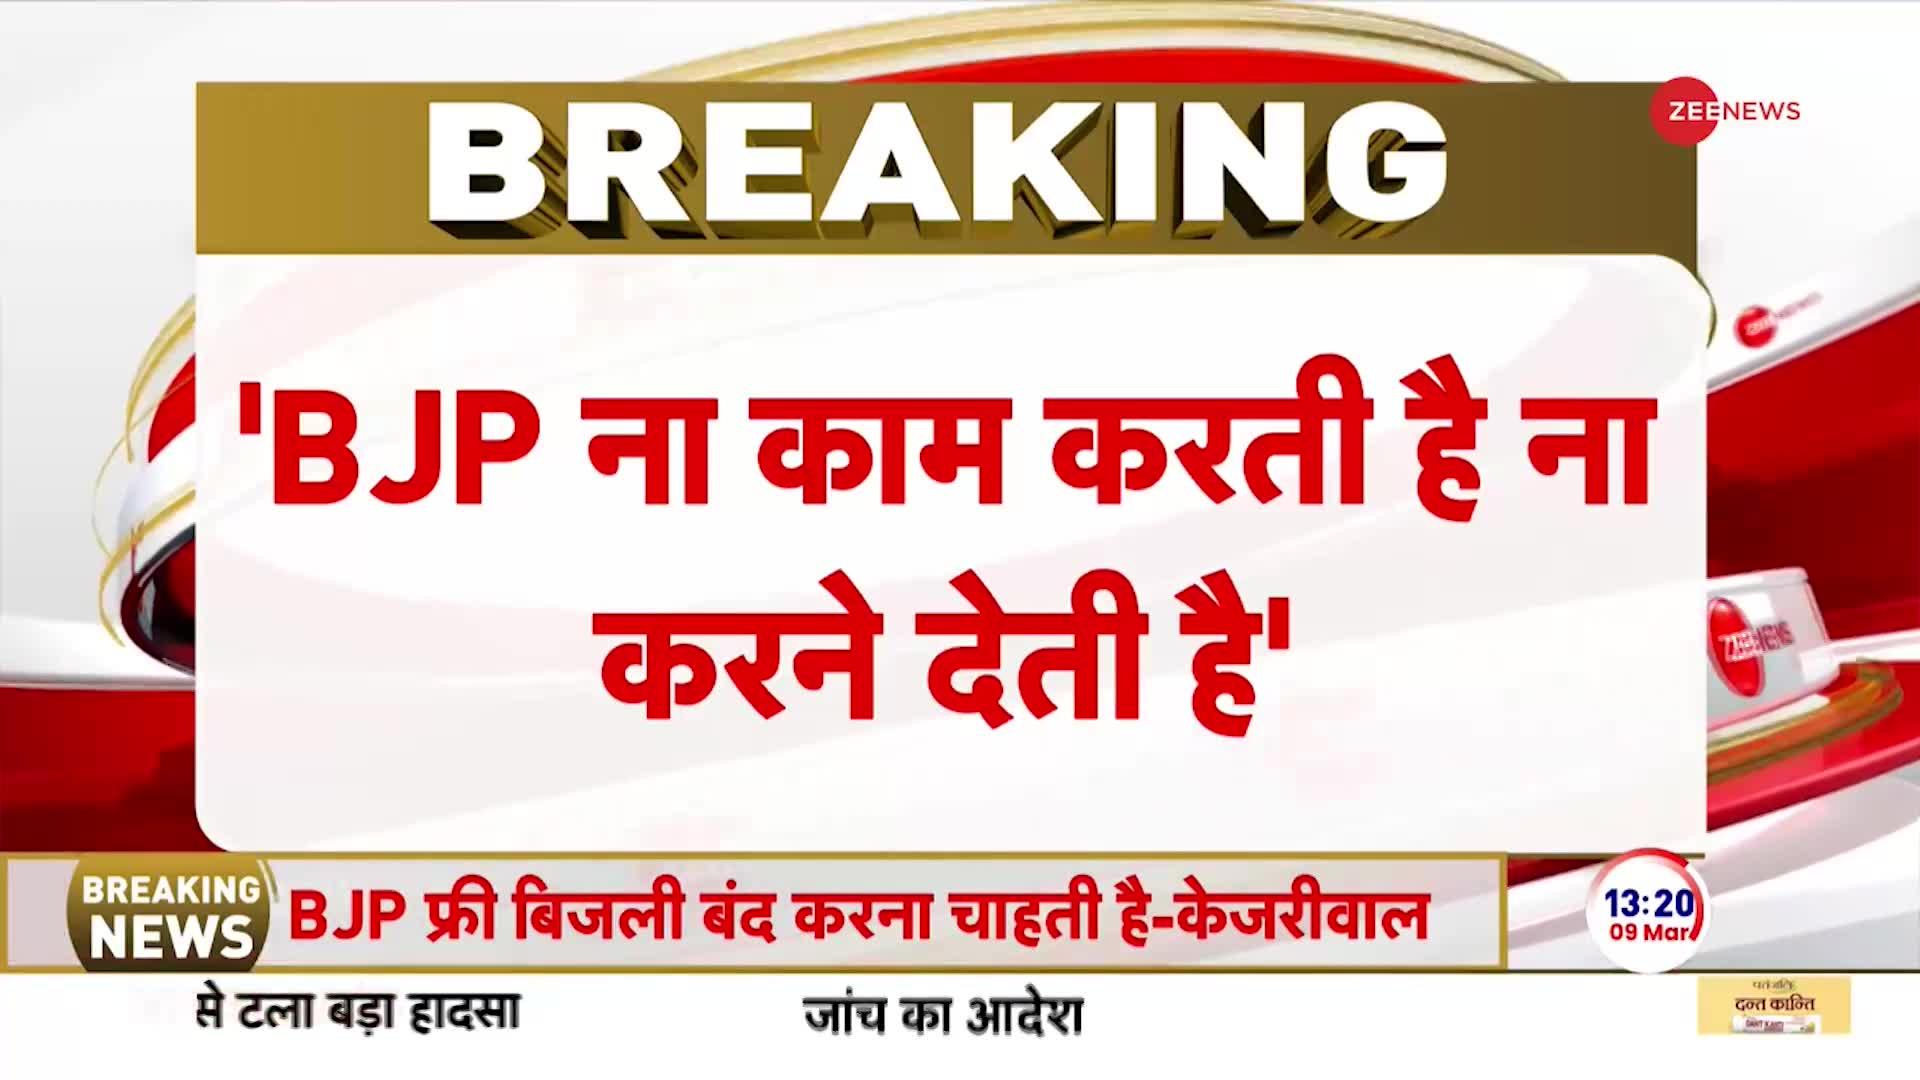 Kejriwal on Pm Modi Breaking: 'बीजेपी ना काम करती है, ना करने देती है'-केजरीवाल